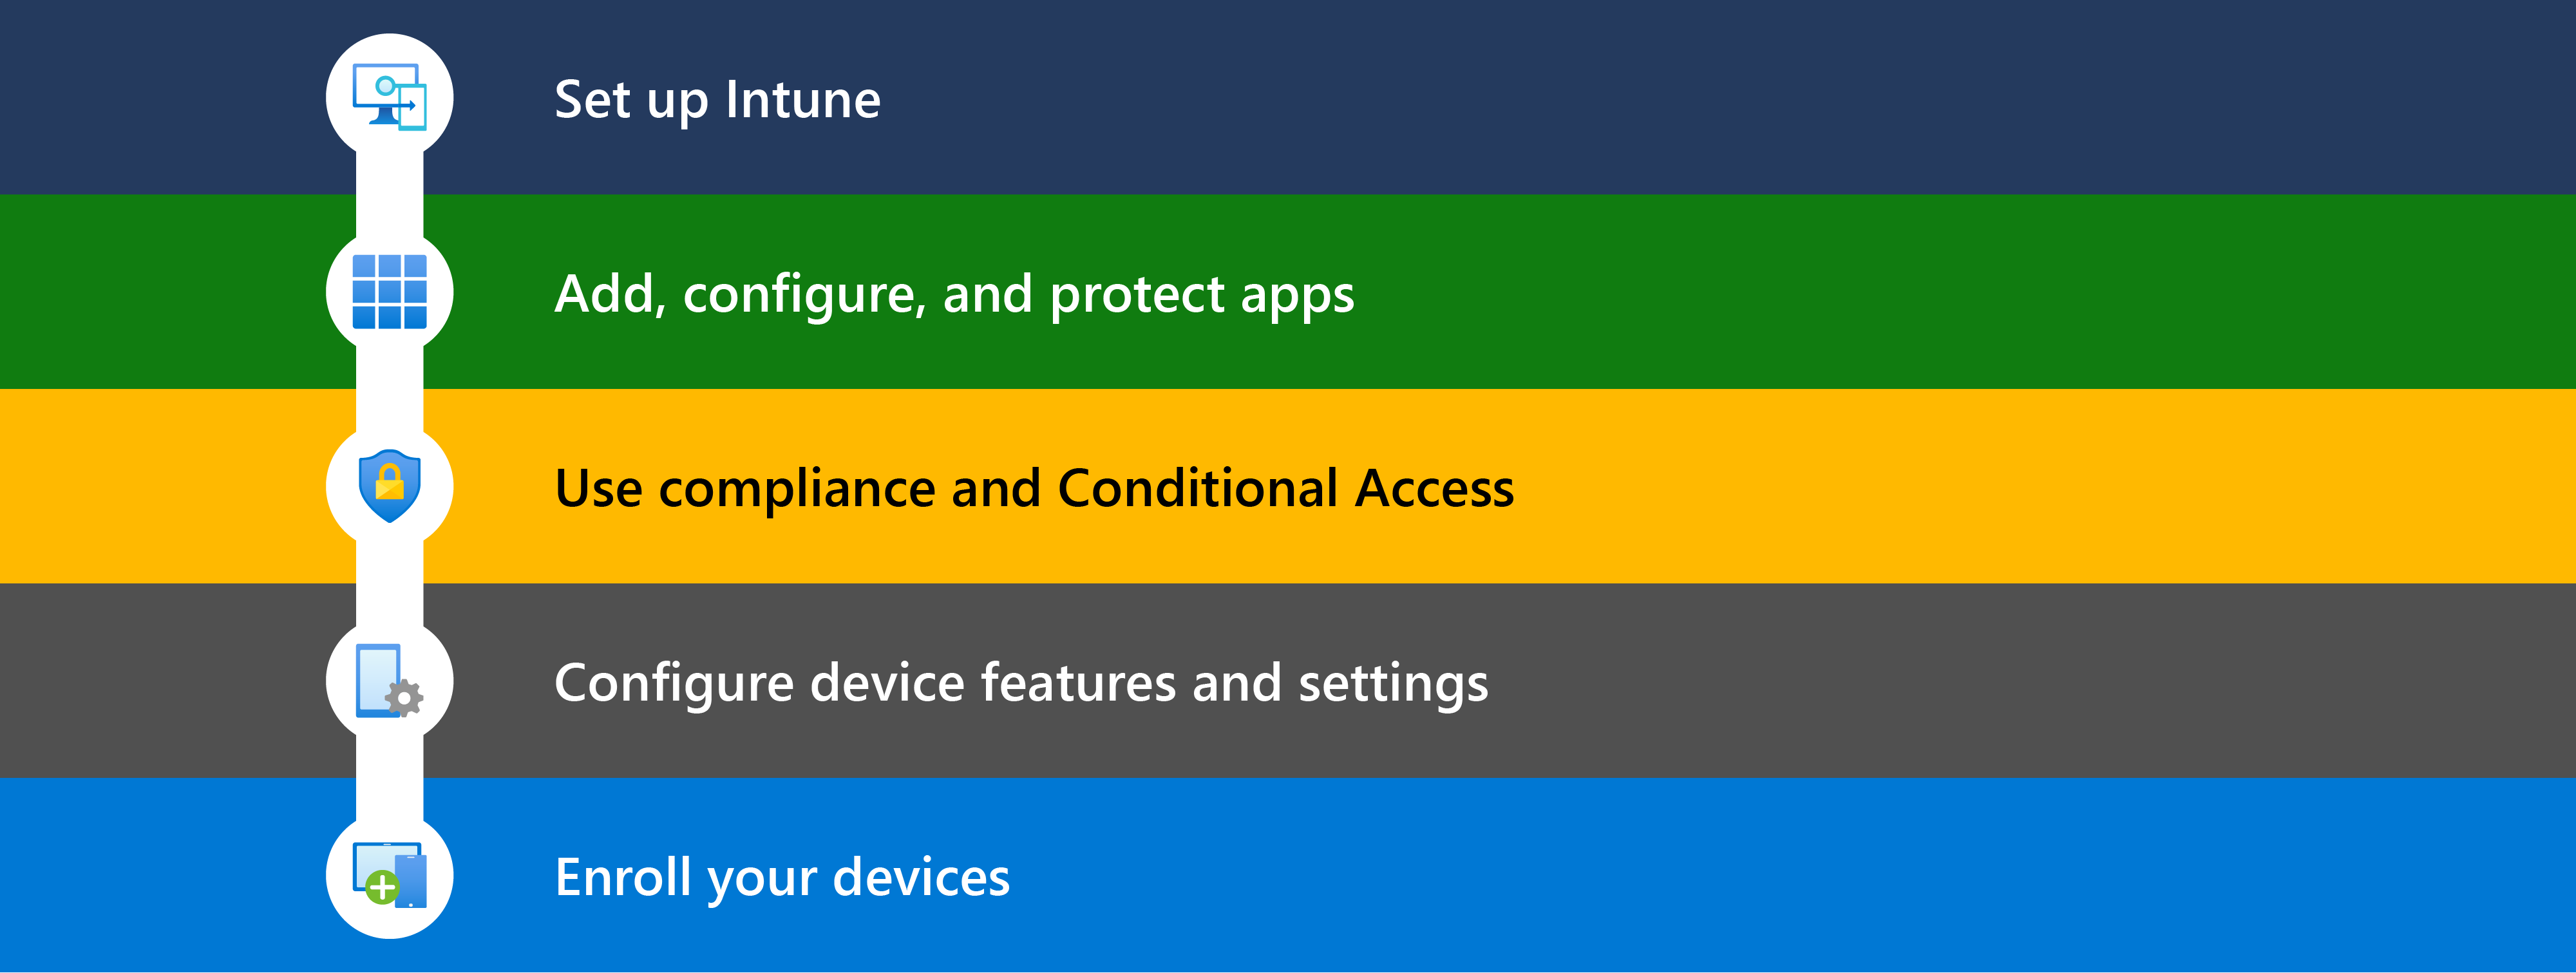 アプリのセットアップ、アプリの追加、条件付きアクセスの使用、デバイス機能の構成、管理するデバイスの登録など、& Microsoft Intuneを開始するためのさまざまな手順を示す図。